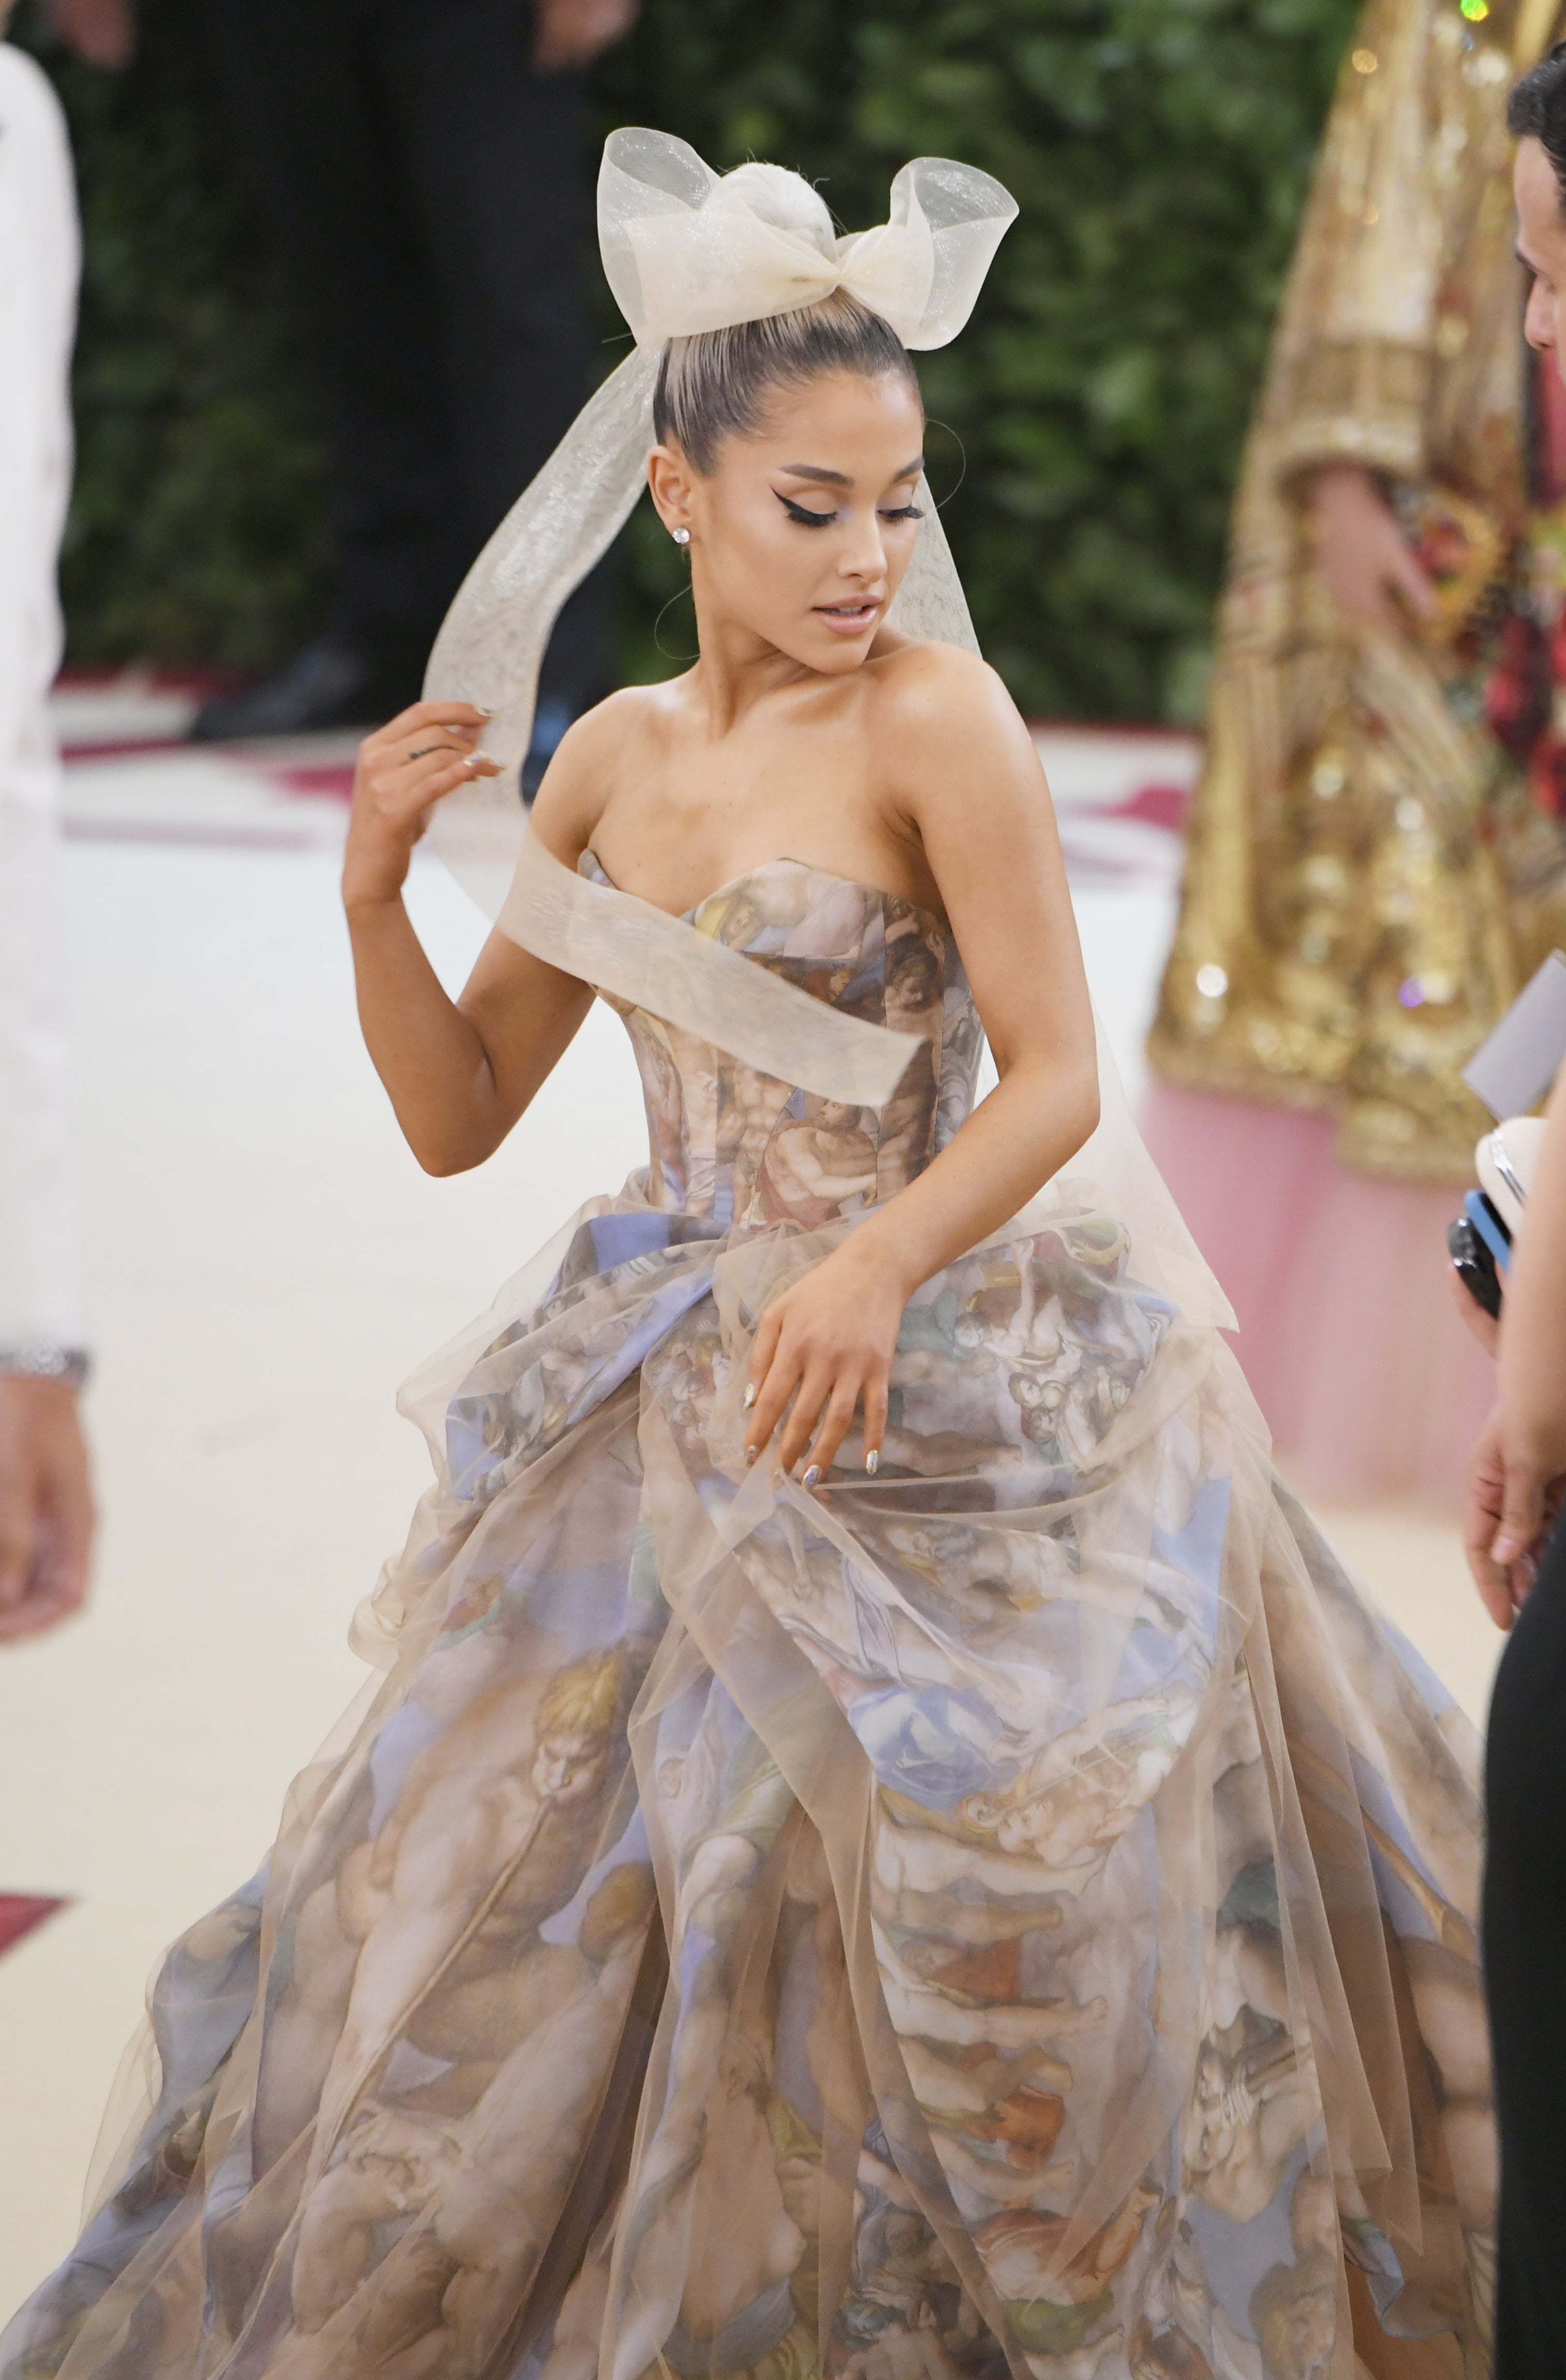 Get the dress - Wheretoget  Ariana grande outfits, Ariana grande